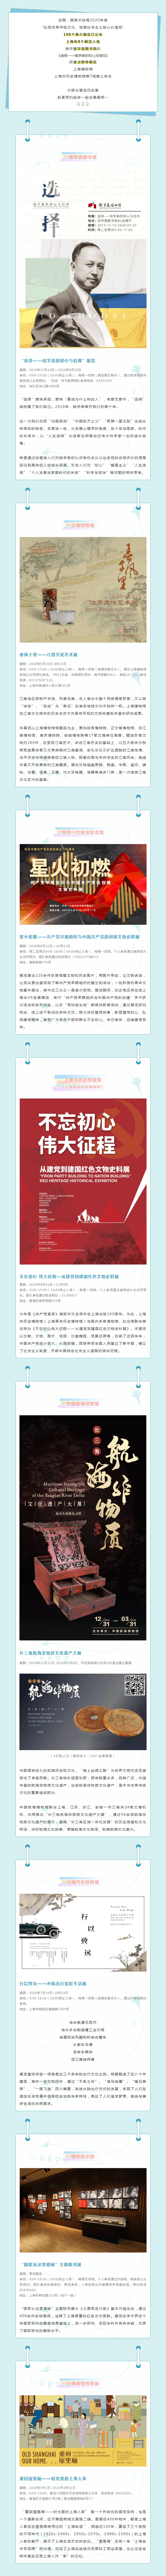 上海8个展览入选国家文物局百个主题展览推介.jpg